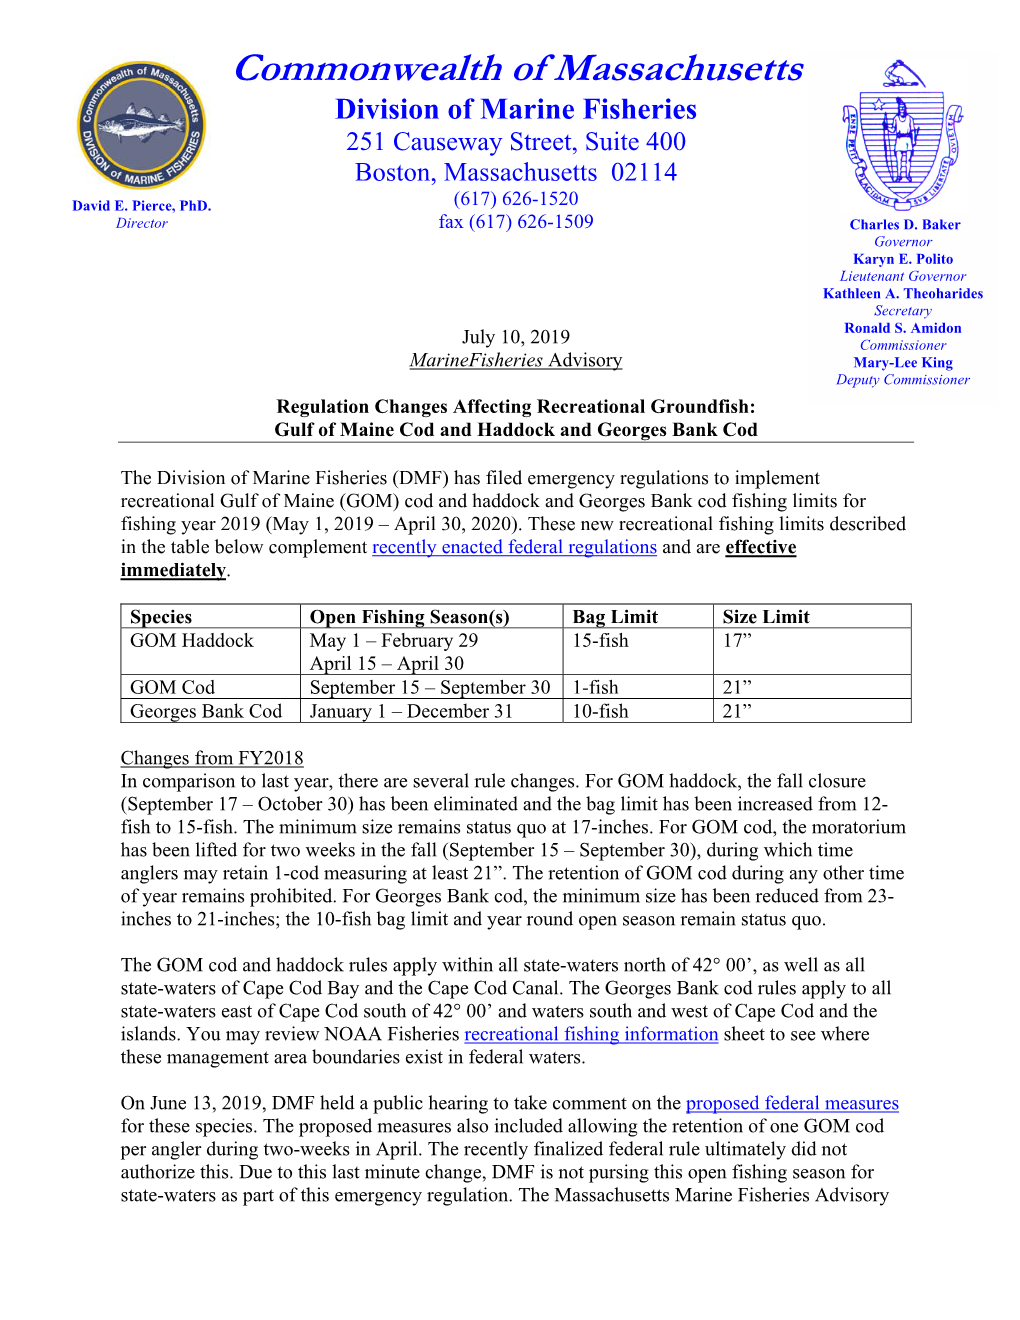 Commonwealth of Massachusetts Division of Marine Fisheries 251 Causeway Street, Suite 400 Boston, Massachusetts 02114 (617) 626-1520 David E